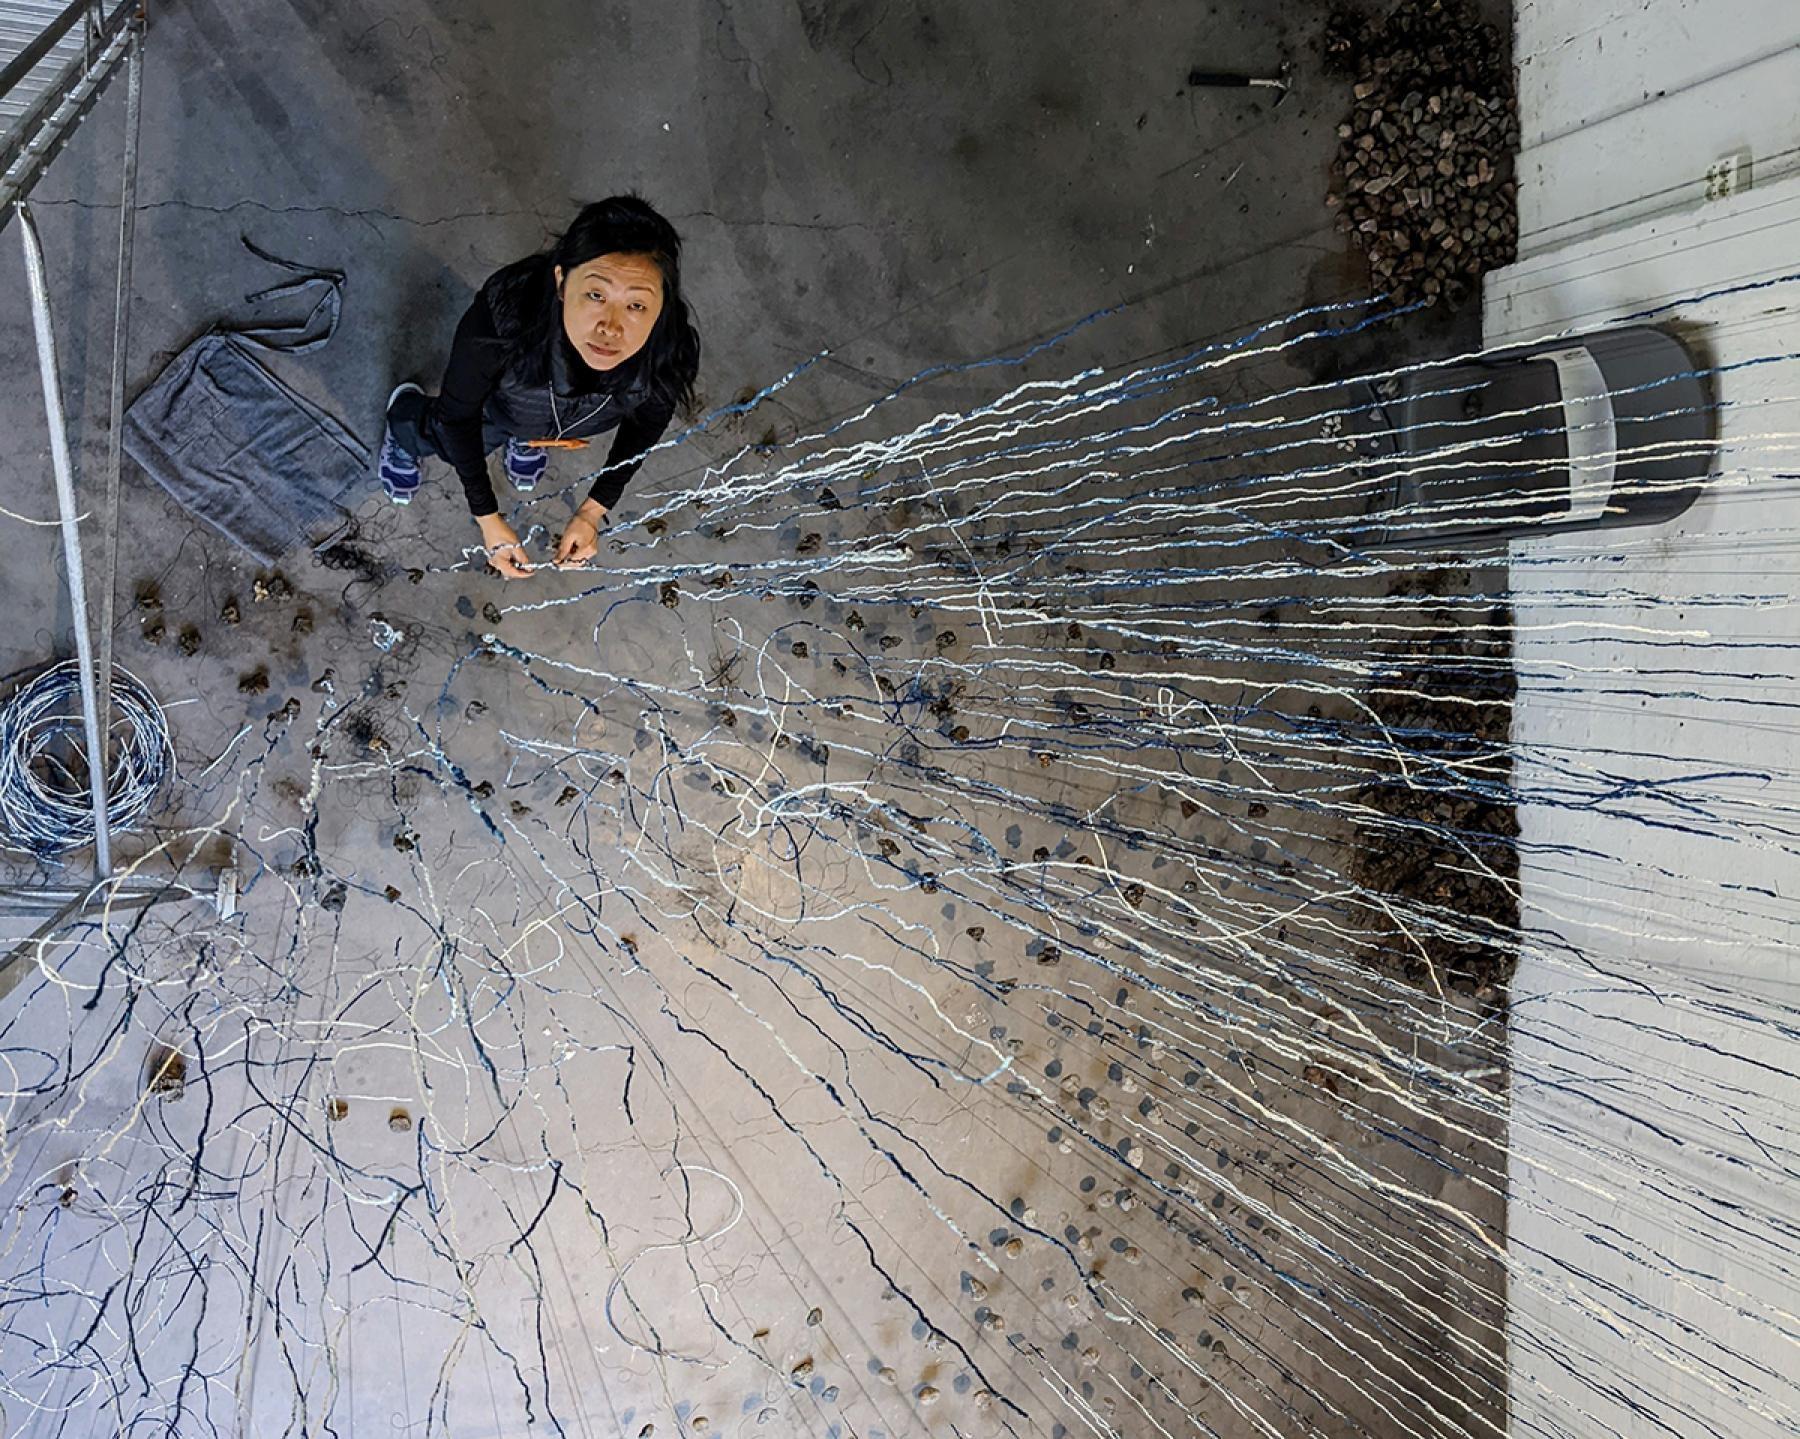 Beili Liu installs Still Winds in Fiskars, Finland as part of the Fiskars Village Art and Design Biennale in May.